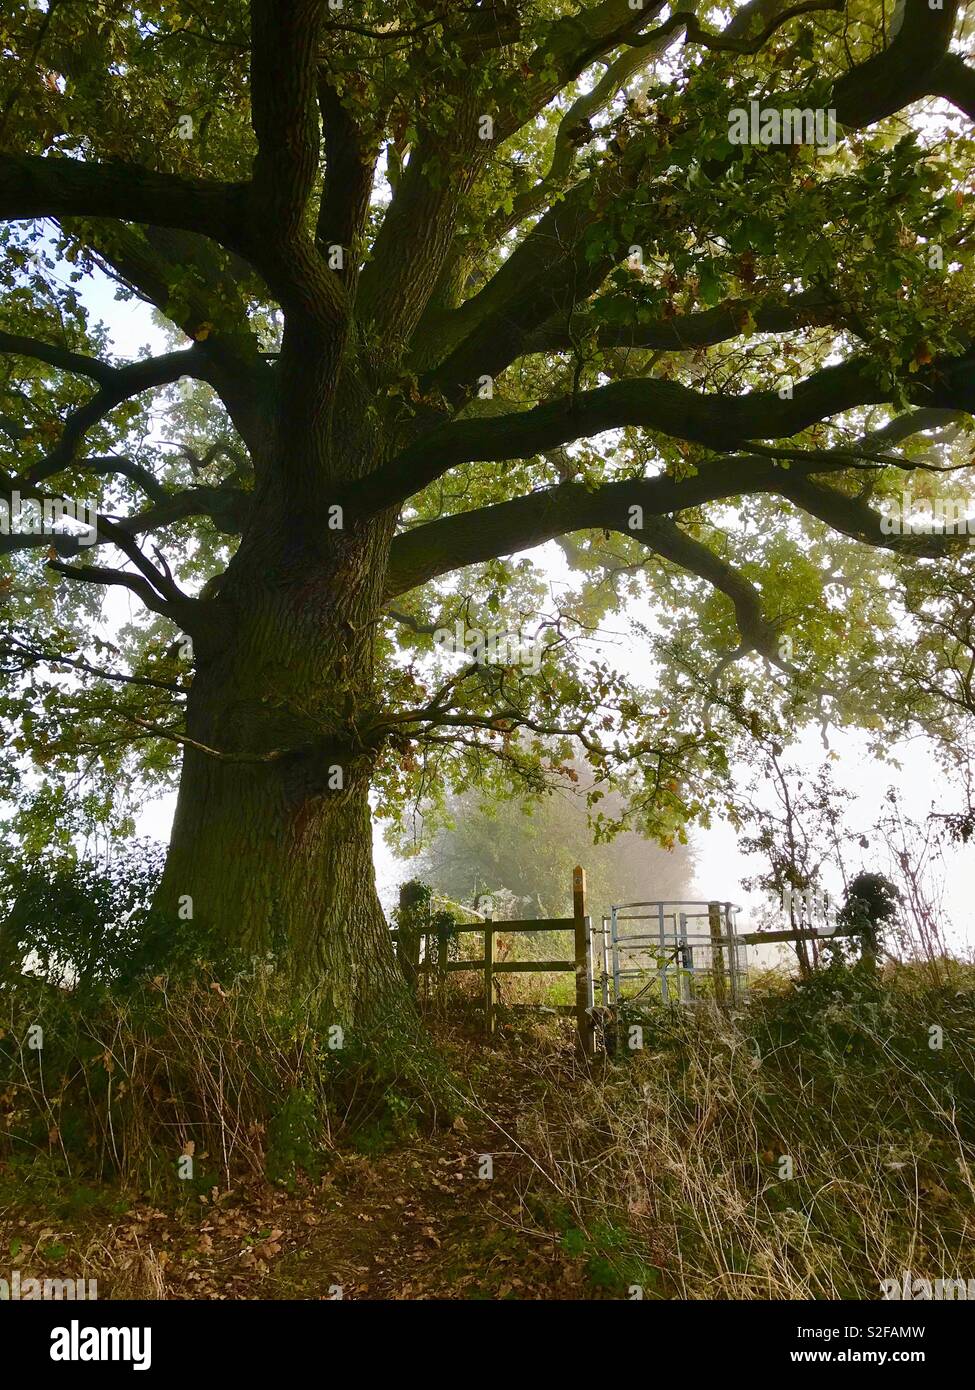 Ancient oak tree Stock Photo